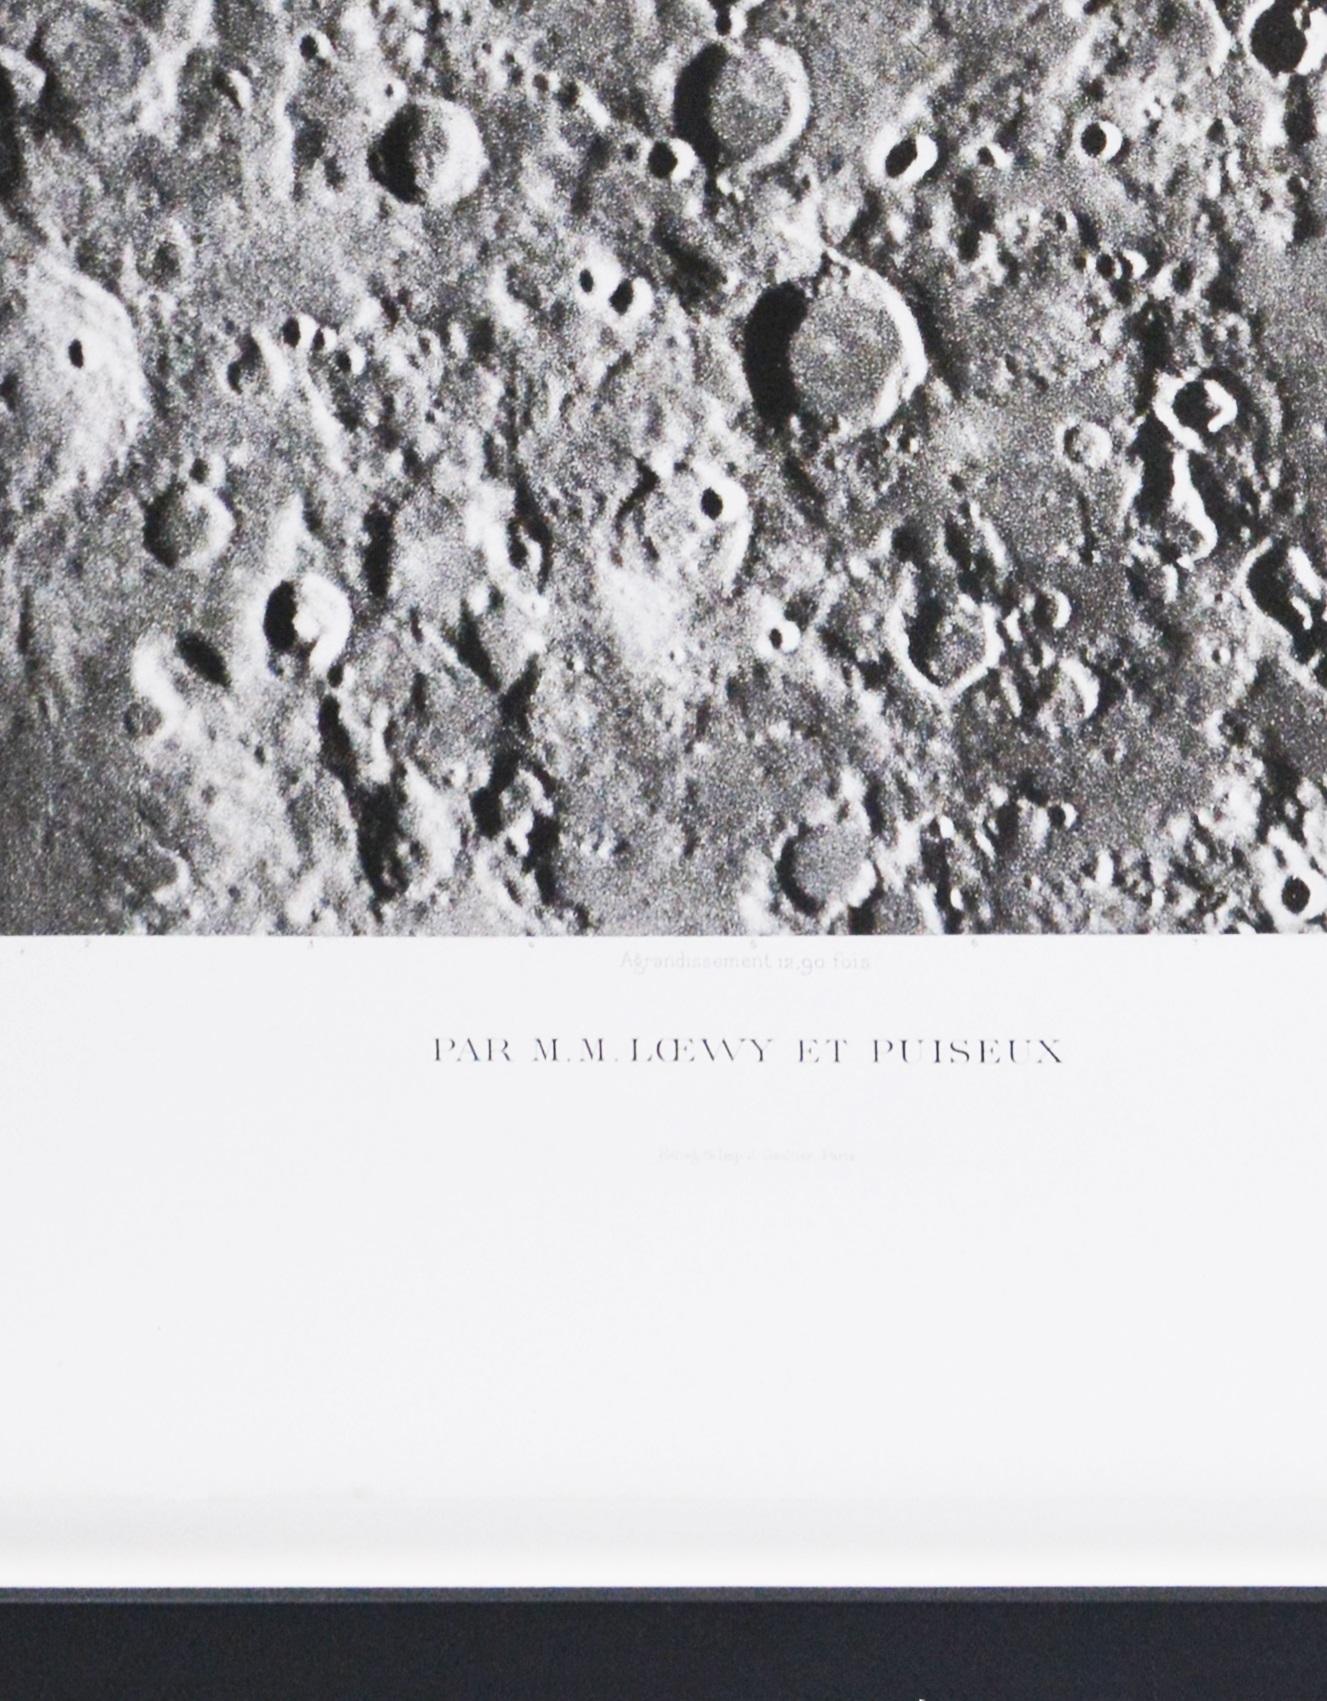 GEMMA FRISIUS_SACROBOSCO_DESCAR - Héliogravure of the Moon's Surface. - Photograph by Moritz Loewy; Pierre-Henry Puiseux